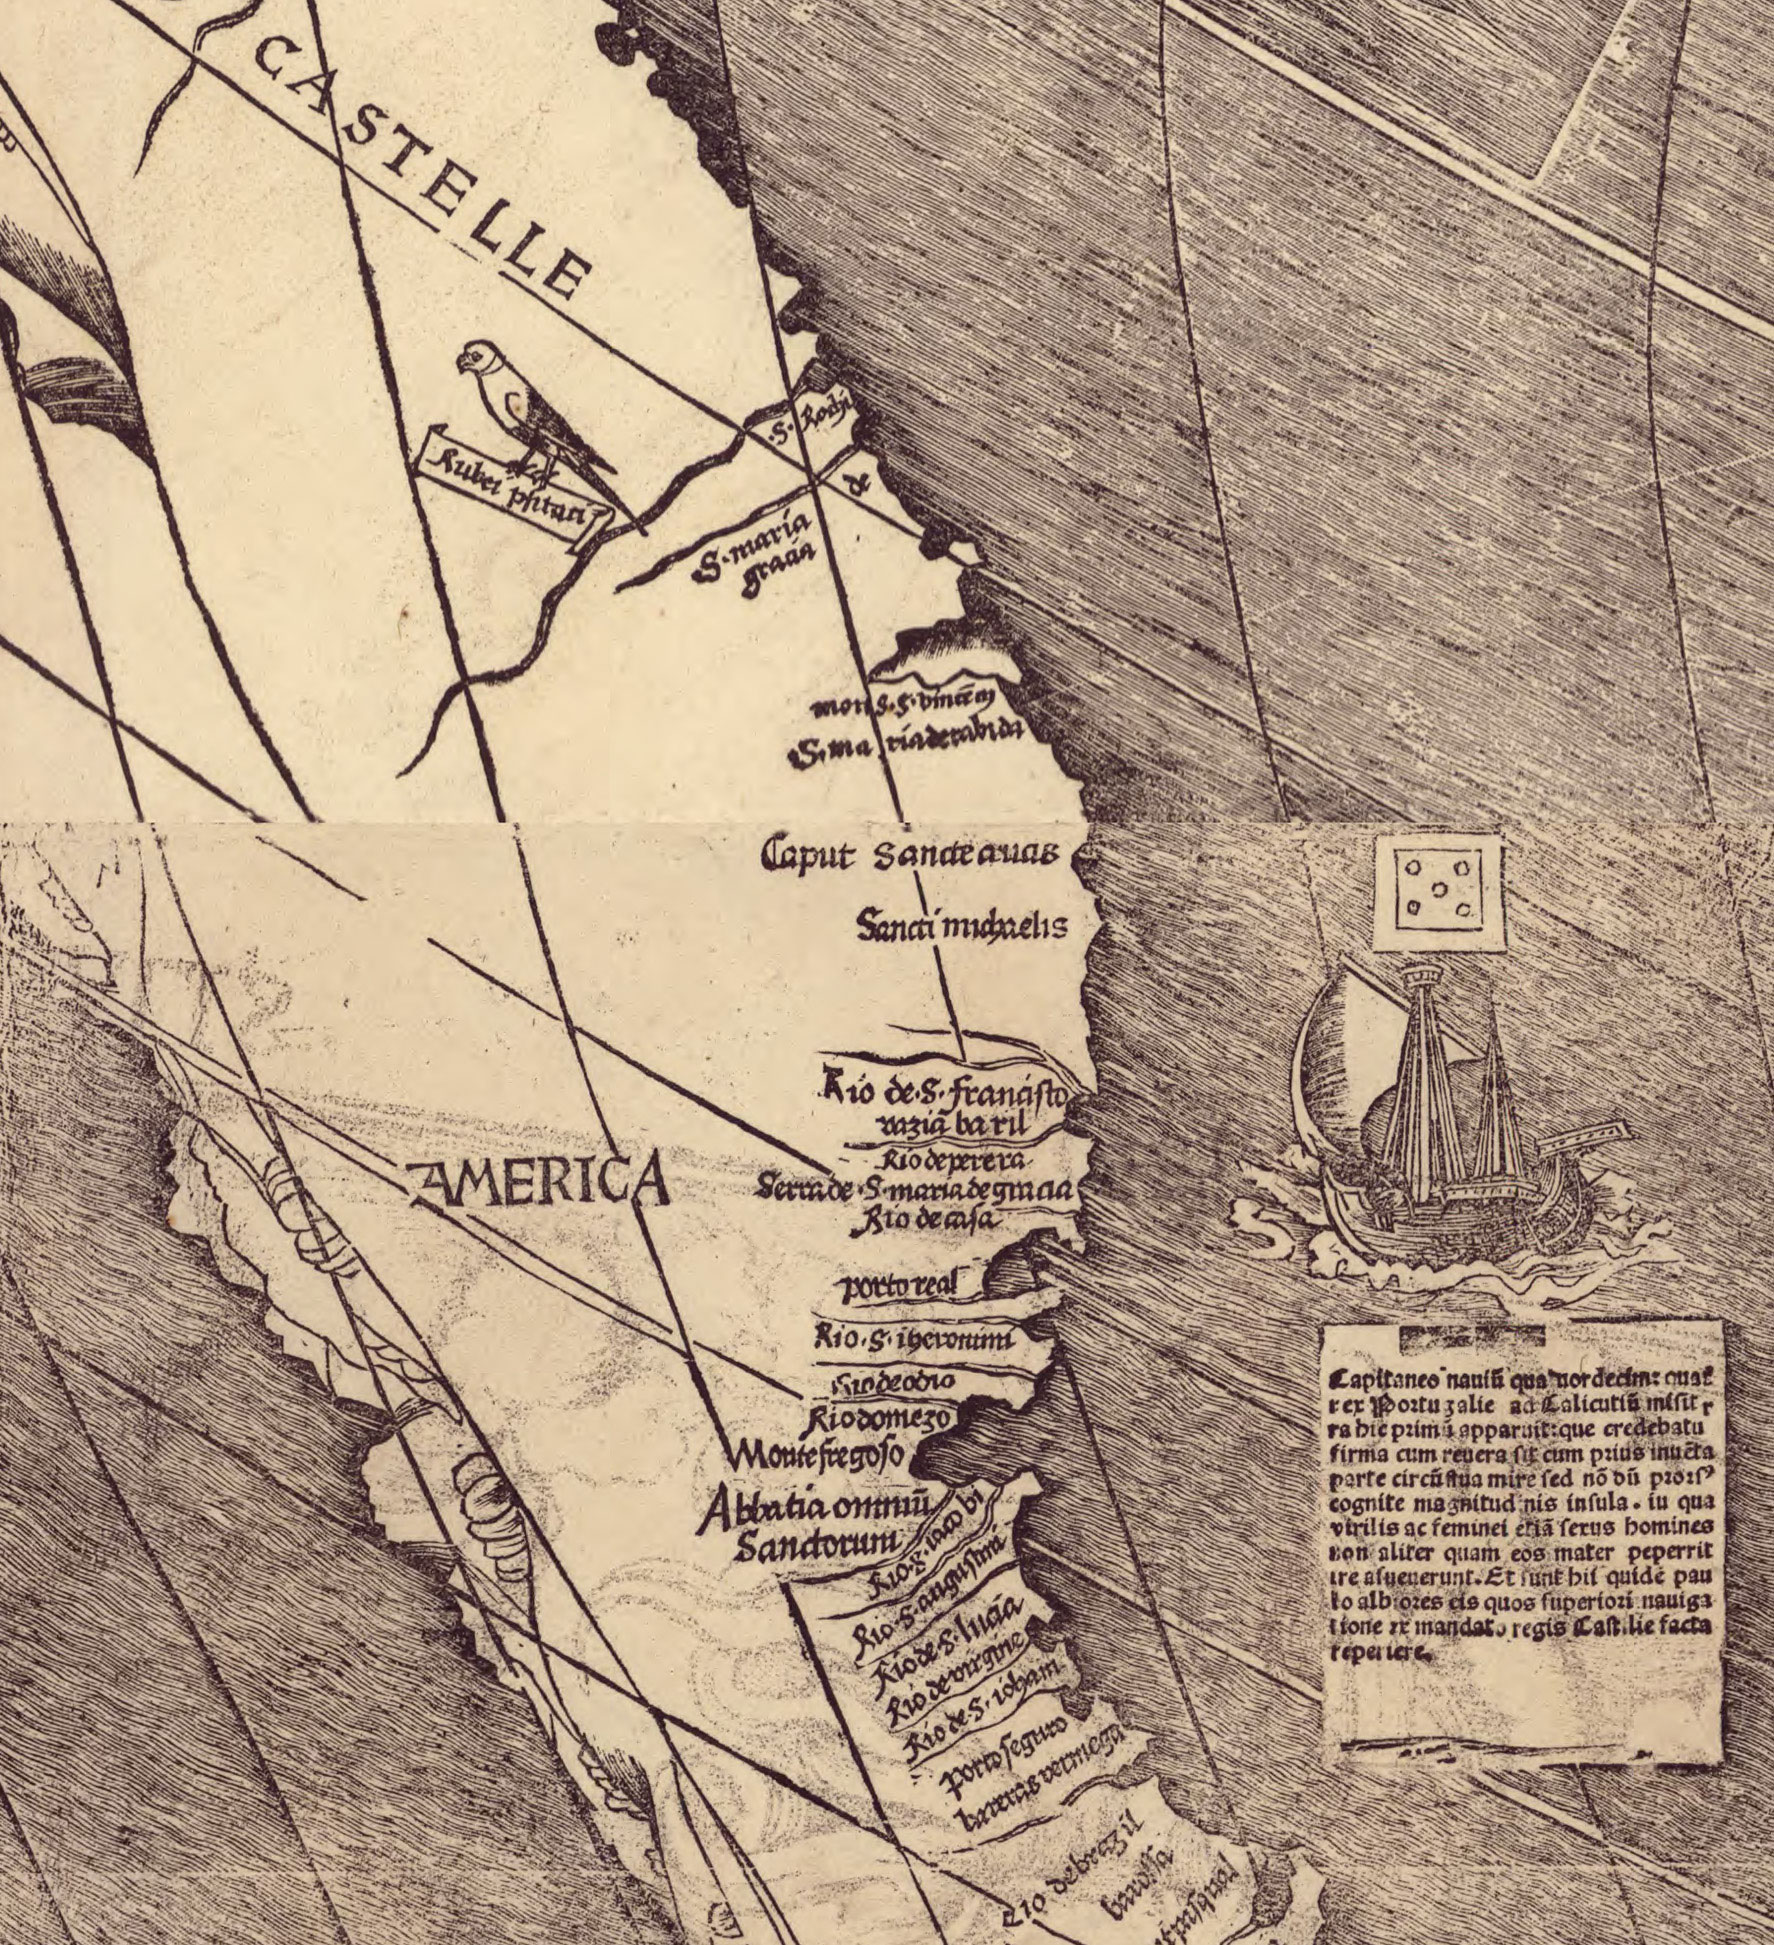 Détail de la carte de Martin Waldseemüller, réalisée en 1507, où apparaît pour la première fois le mot "America".